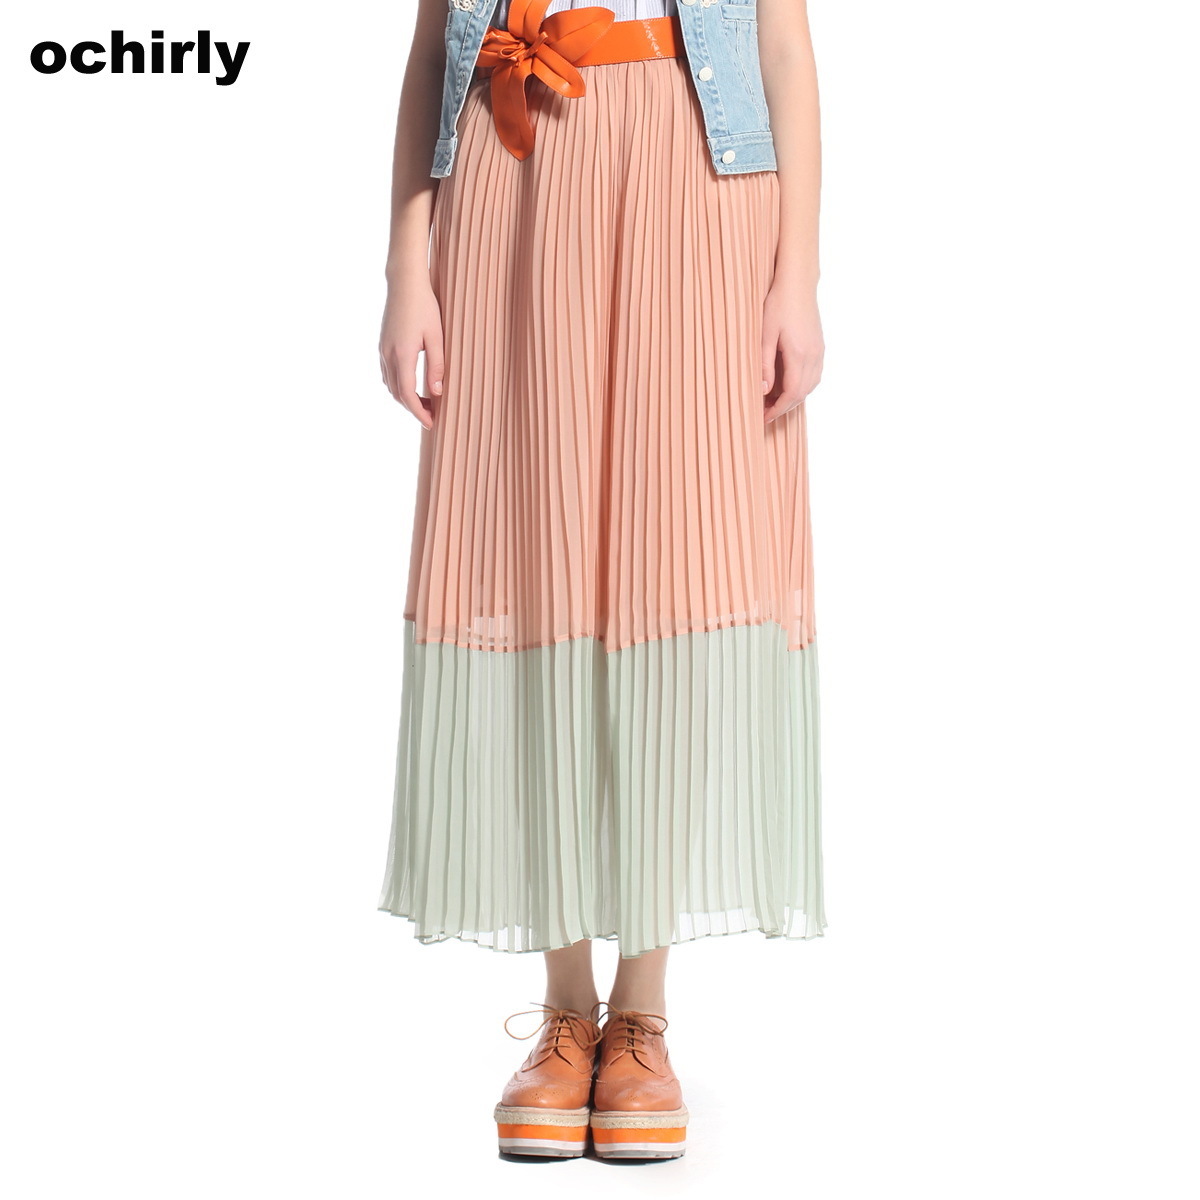 ochirly欧时力2012春季新款粉橙色撞色百褶雪纺长裙